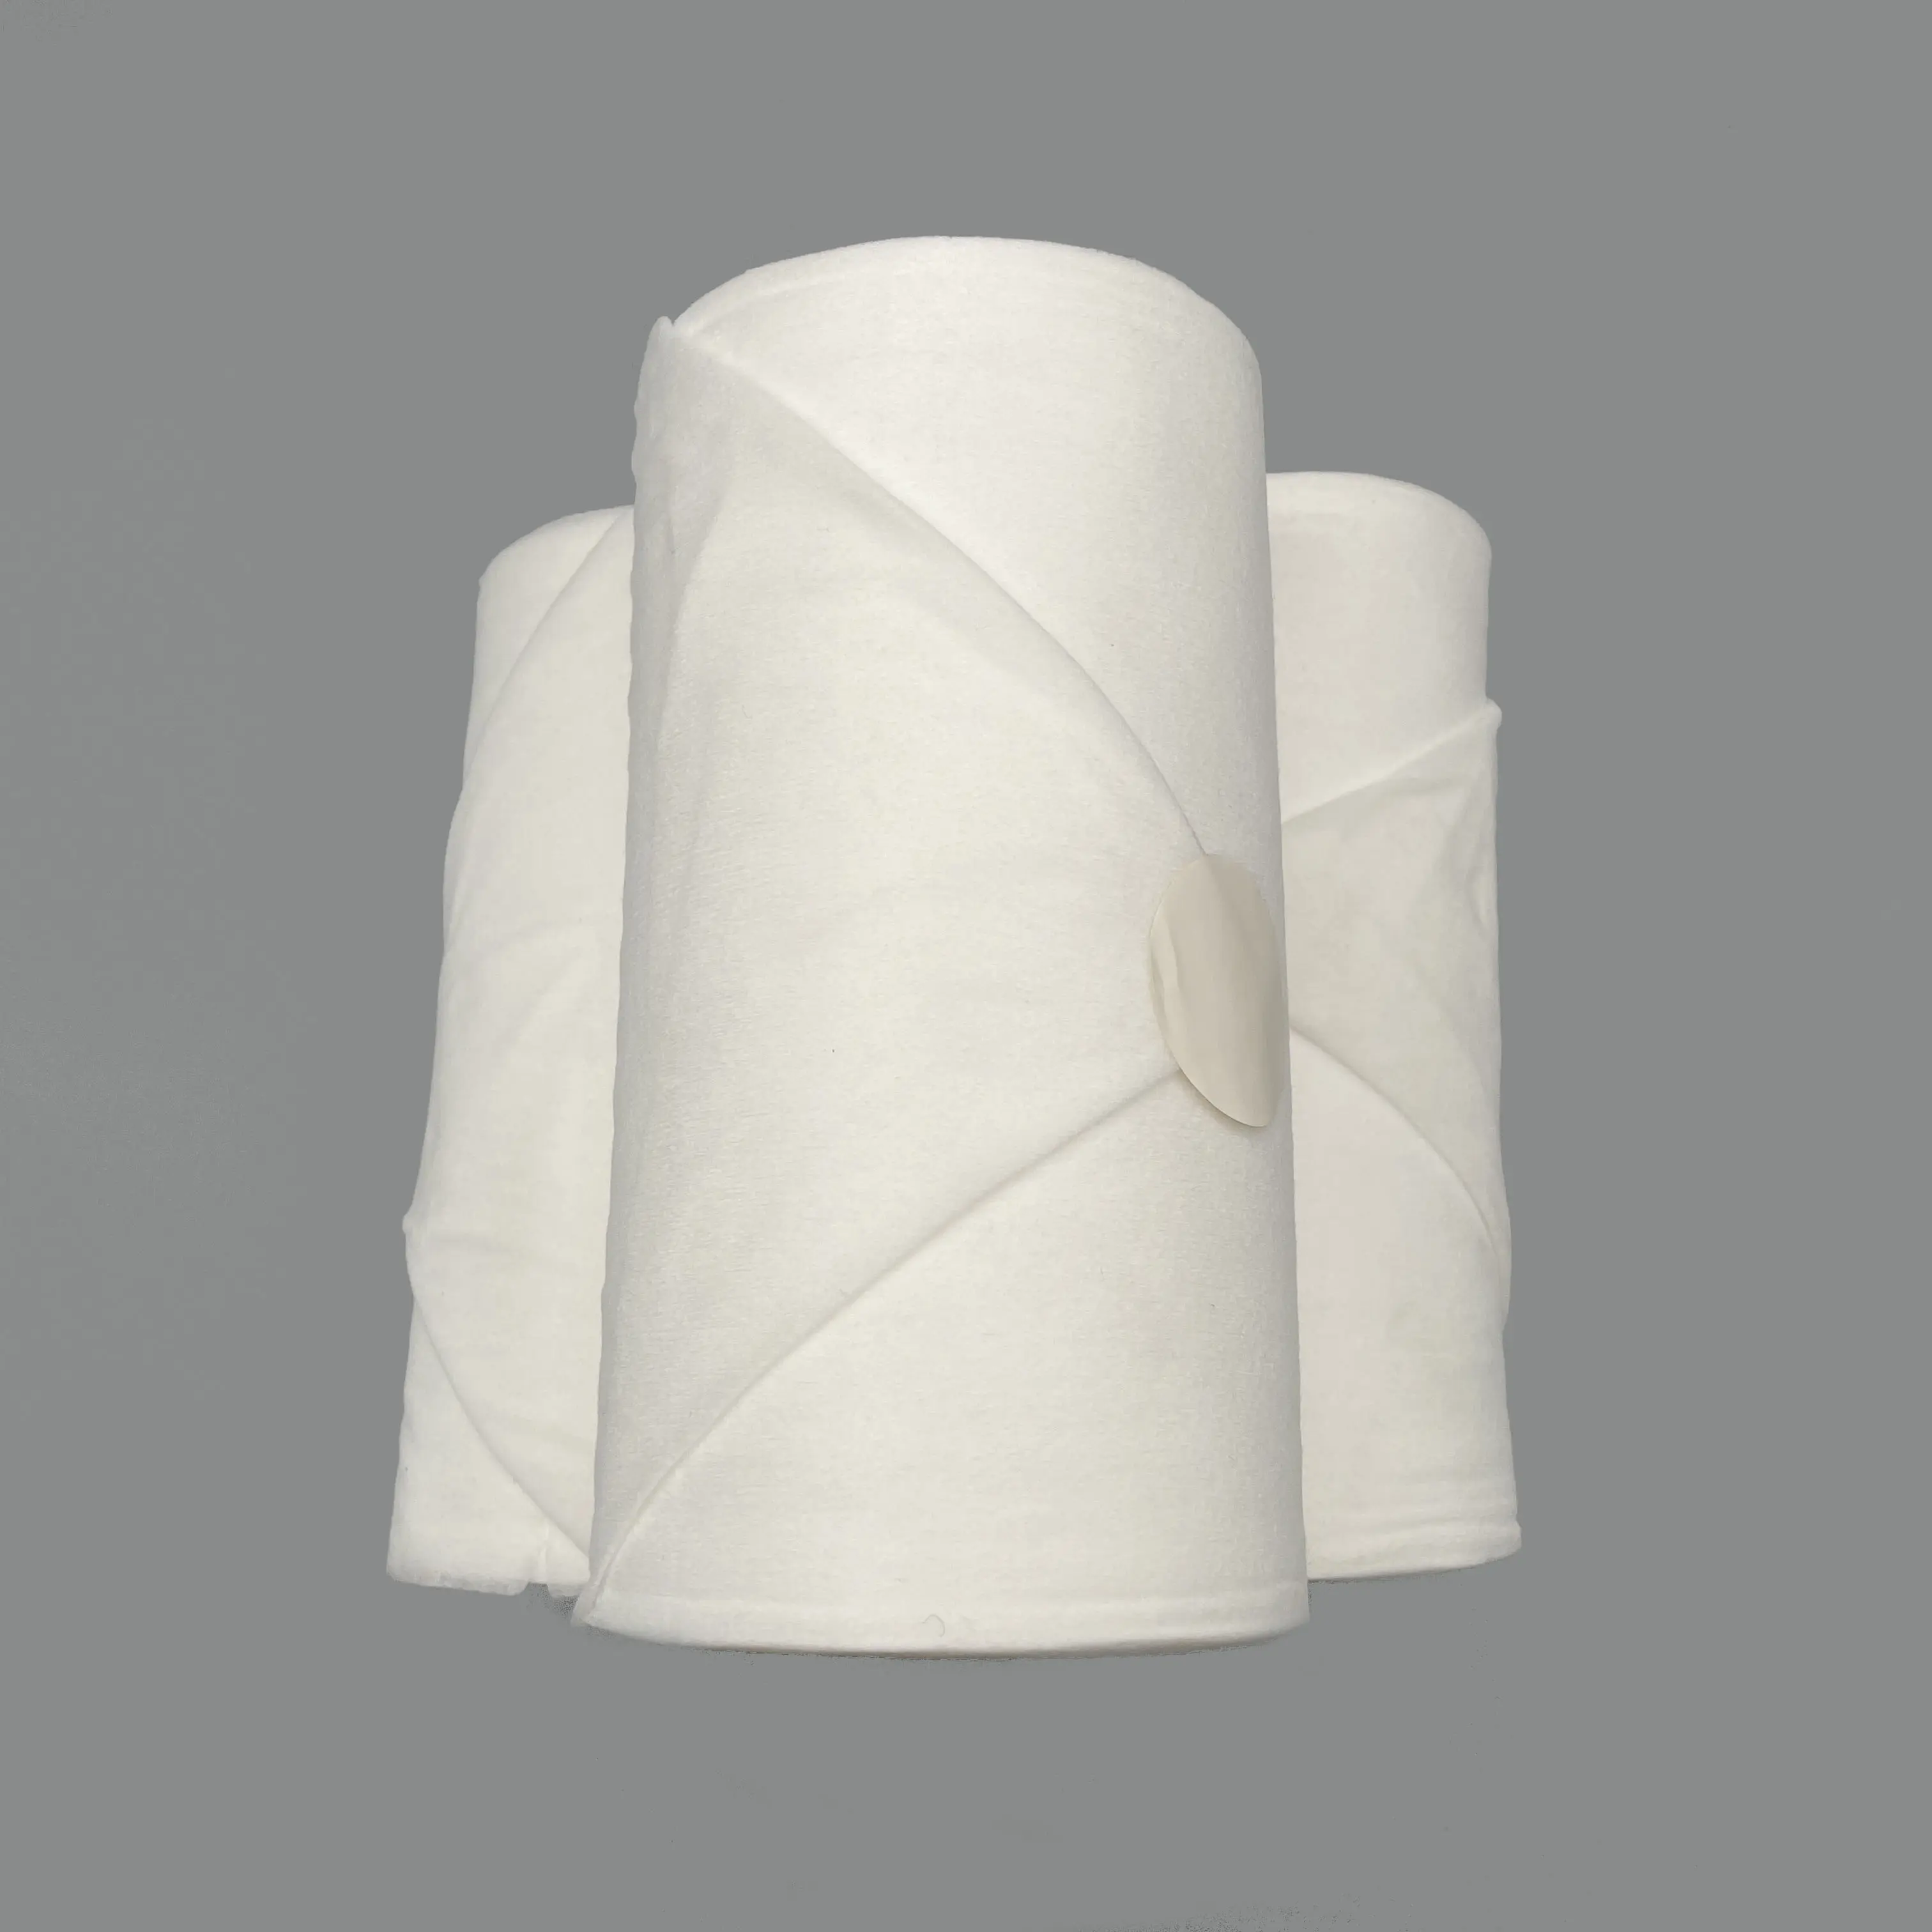 QINGSHE-tela no tejida personalizada de fábrica de China, toallitas húmedas de papel para cocina, rollo de papel seco, 220 hojas, venta al por mayor